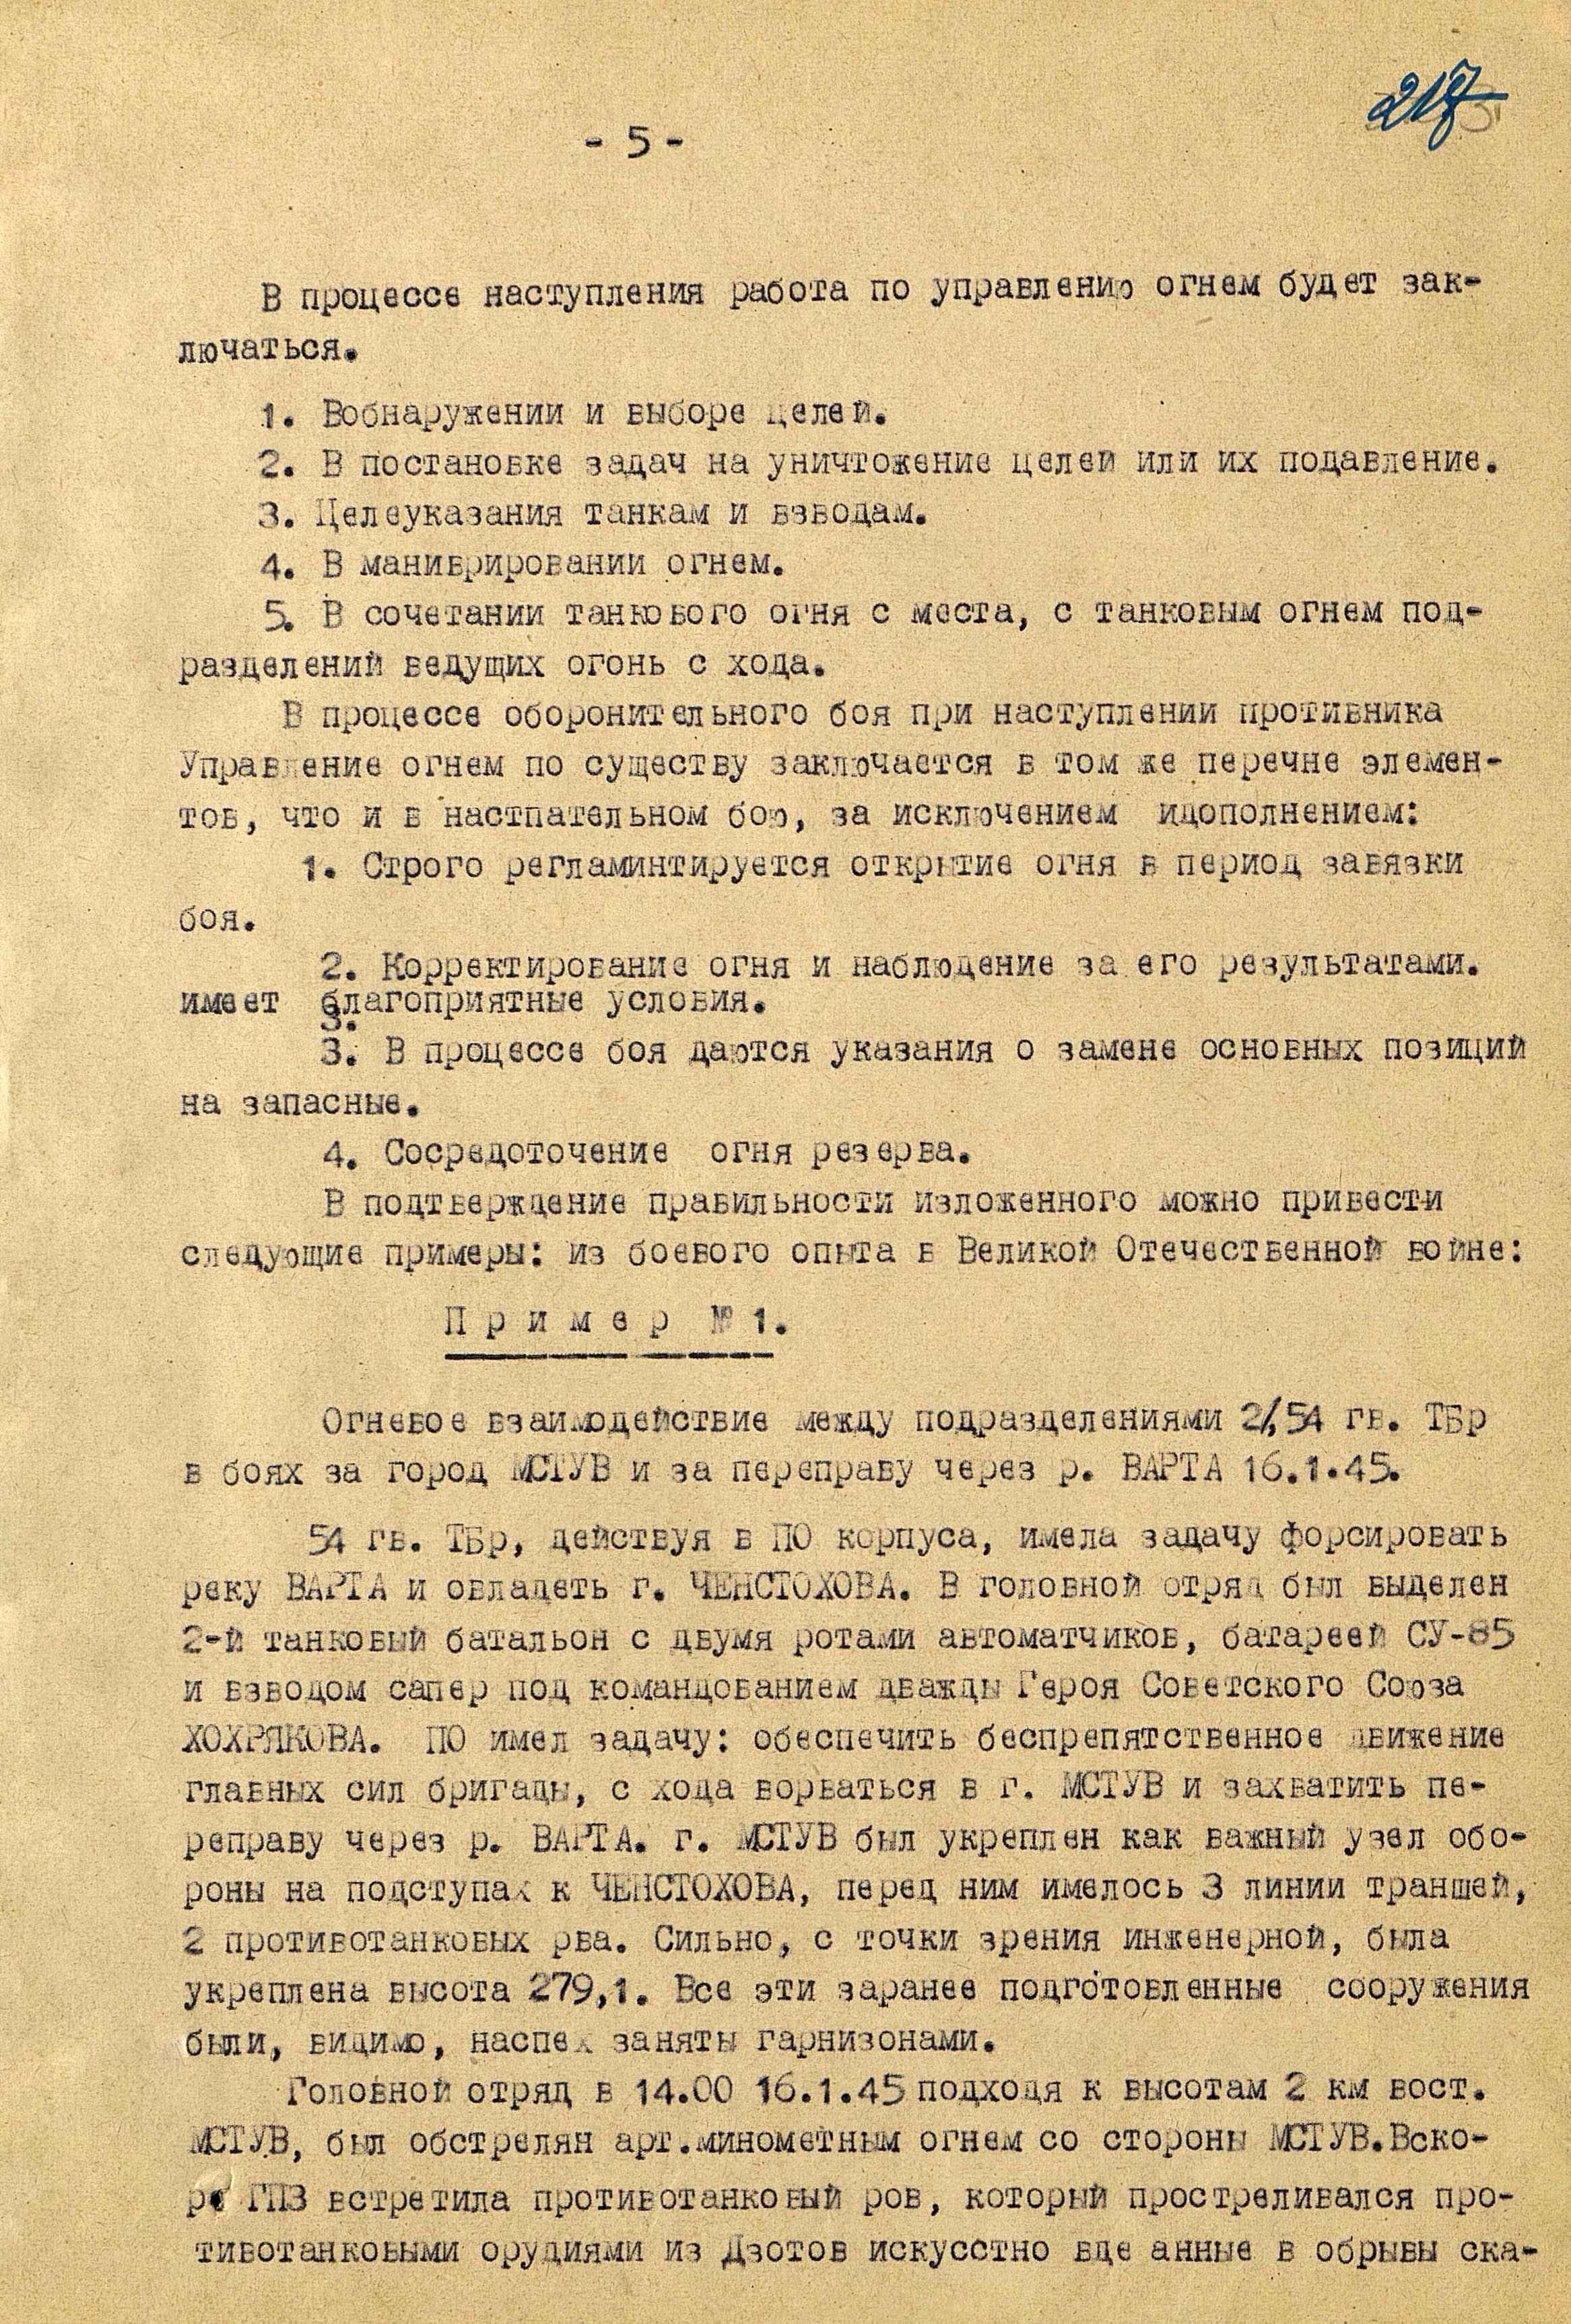 Захват Мстува по версии Чугунков, 16 января 1945